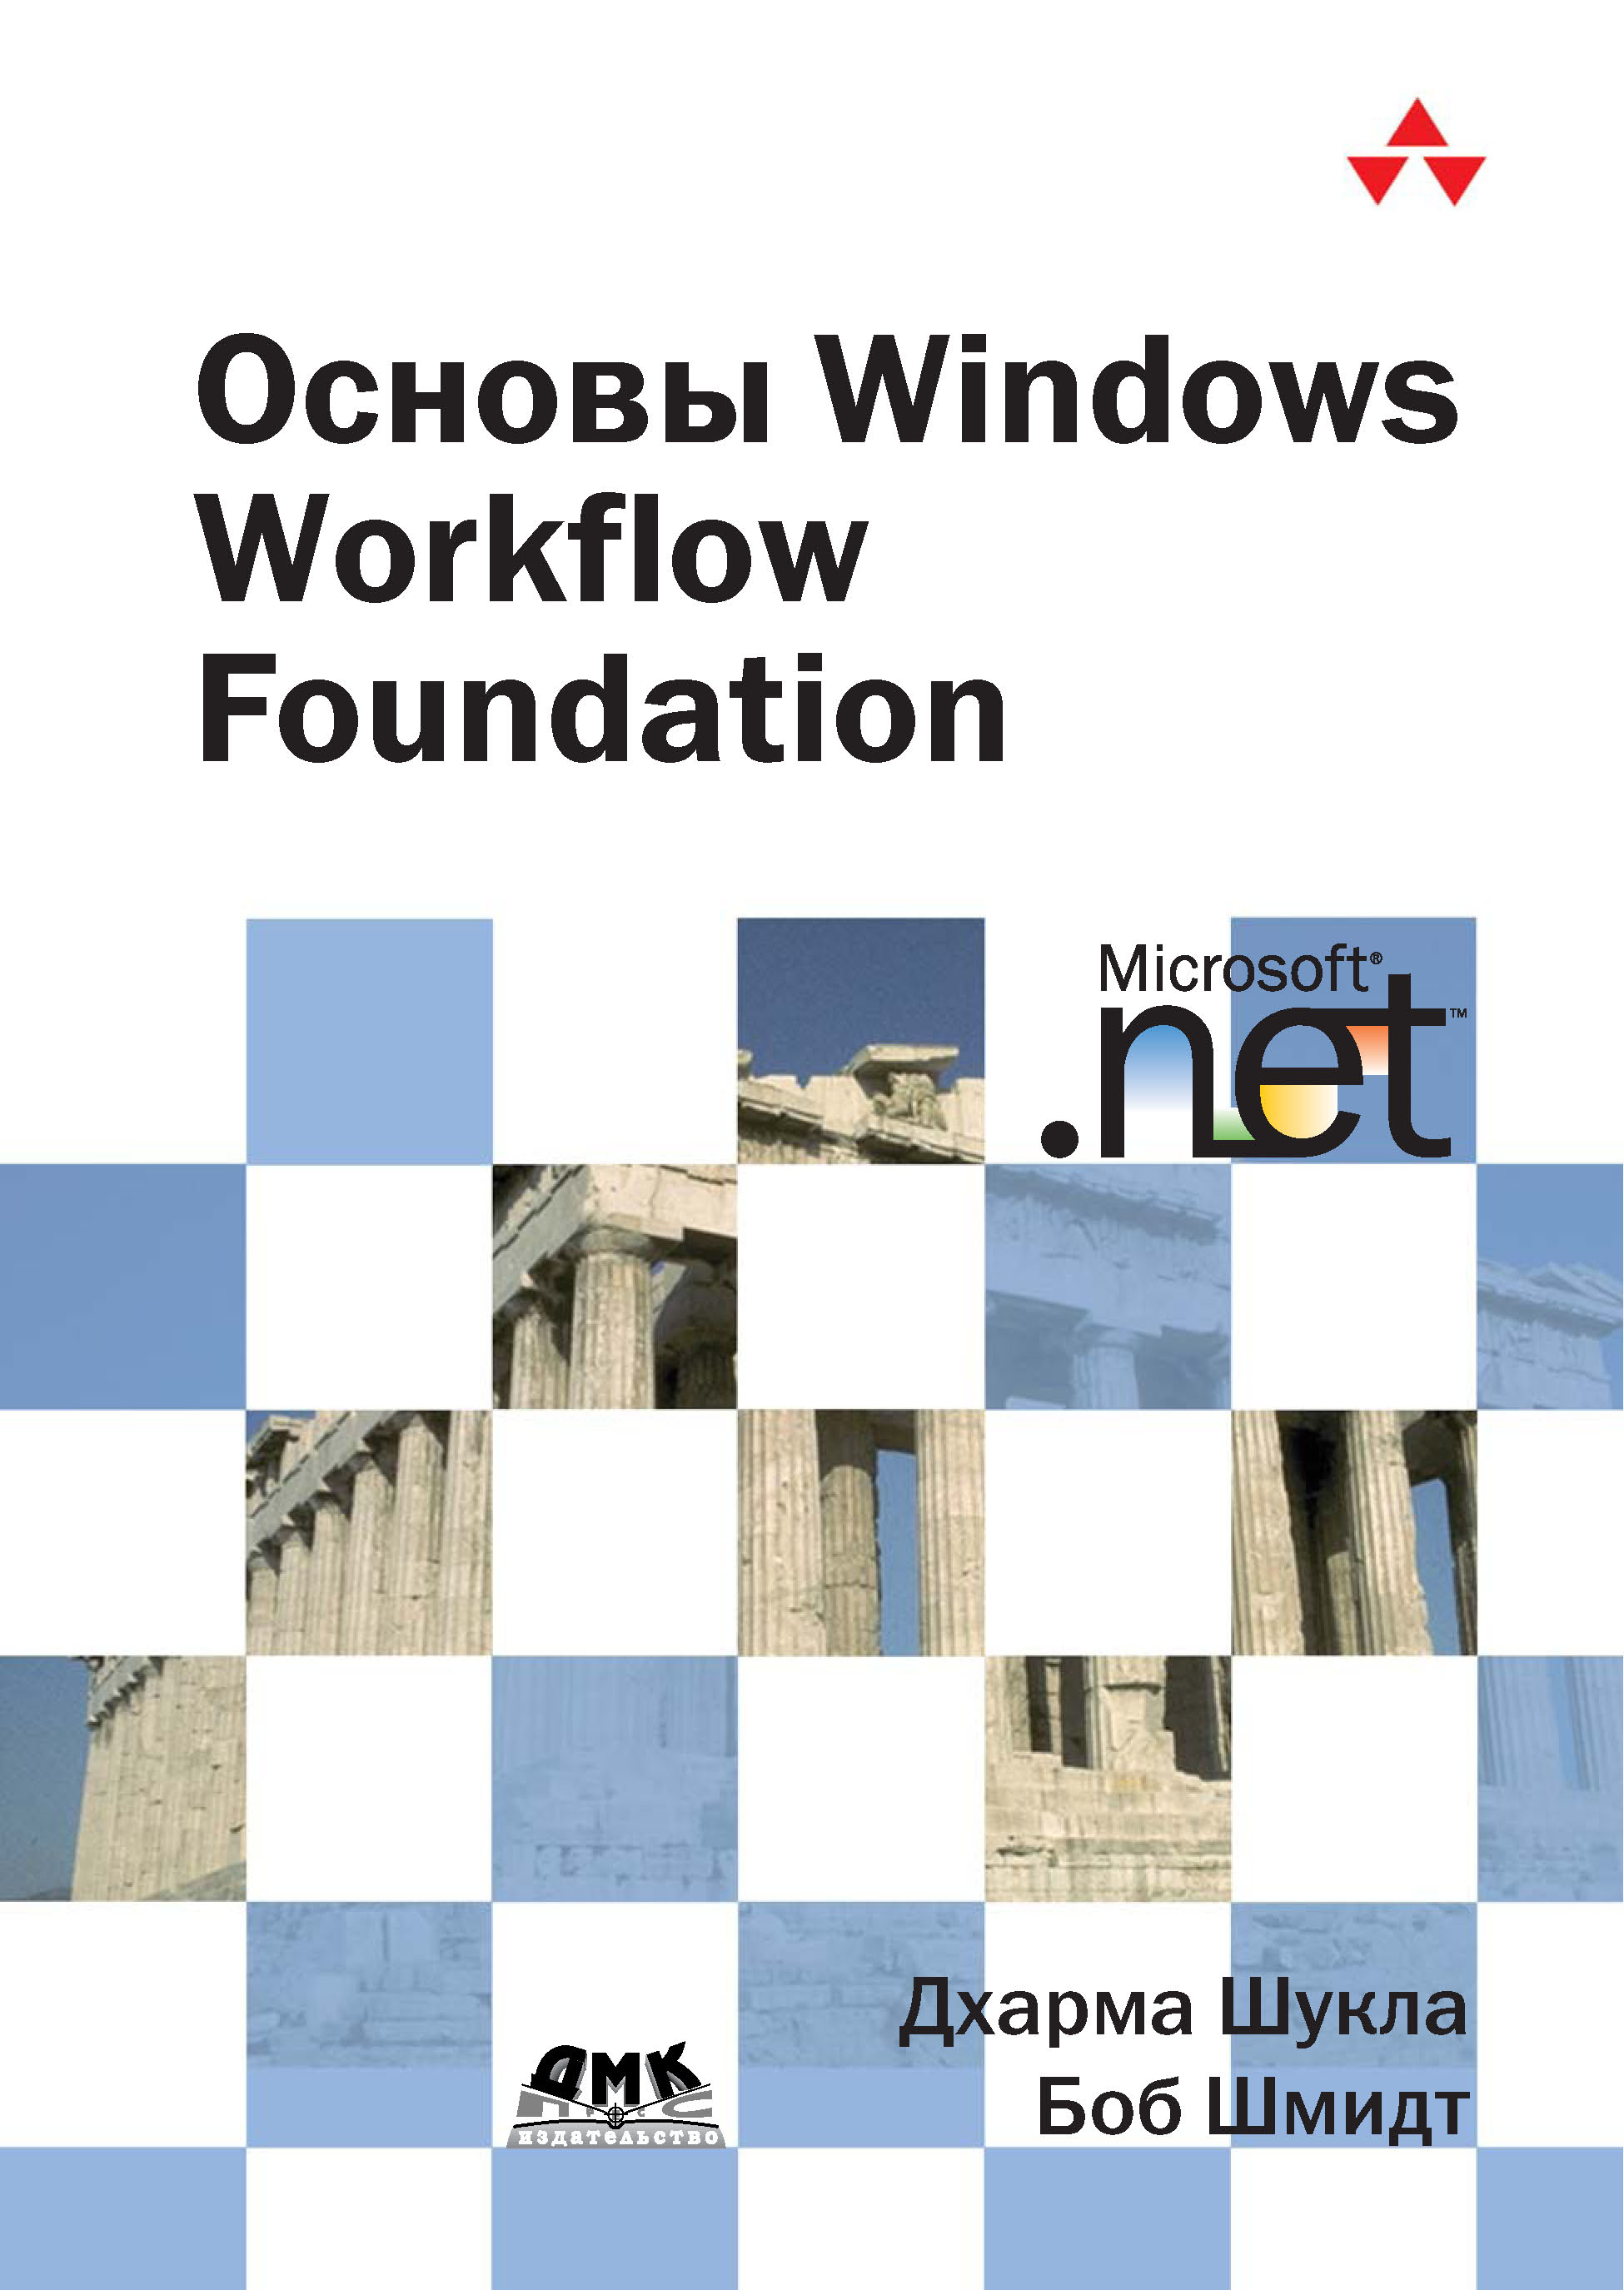 Книга  Основы Windows Workflow Foundation созданная Боб Шмидт, Дхарма Шукла, А. А. Слинкин может относится к жанру зарубежная компьютерная литература, программирование. Стоимость электронной книги Основы Windows Workflow Foundation с идентификатором 6283755 составляет 279.00 руб.